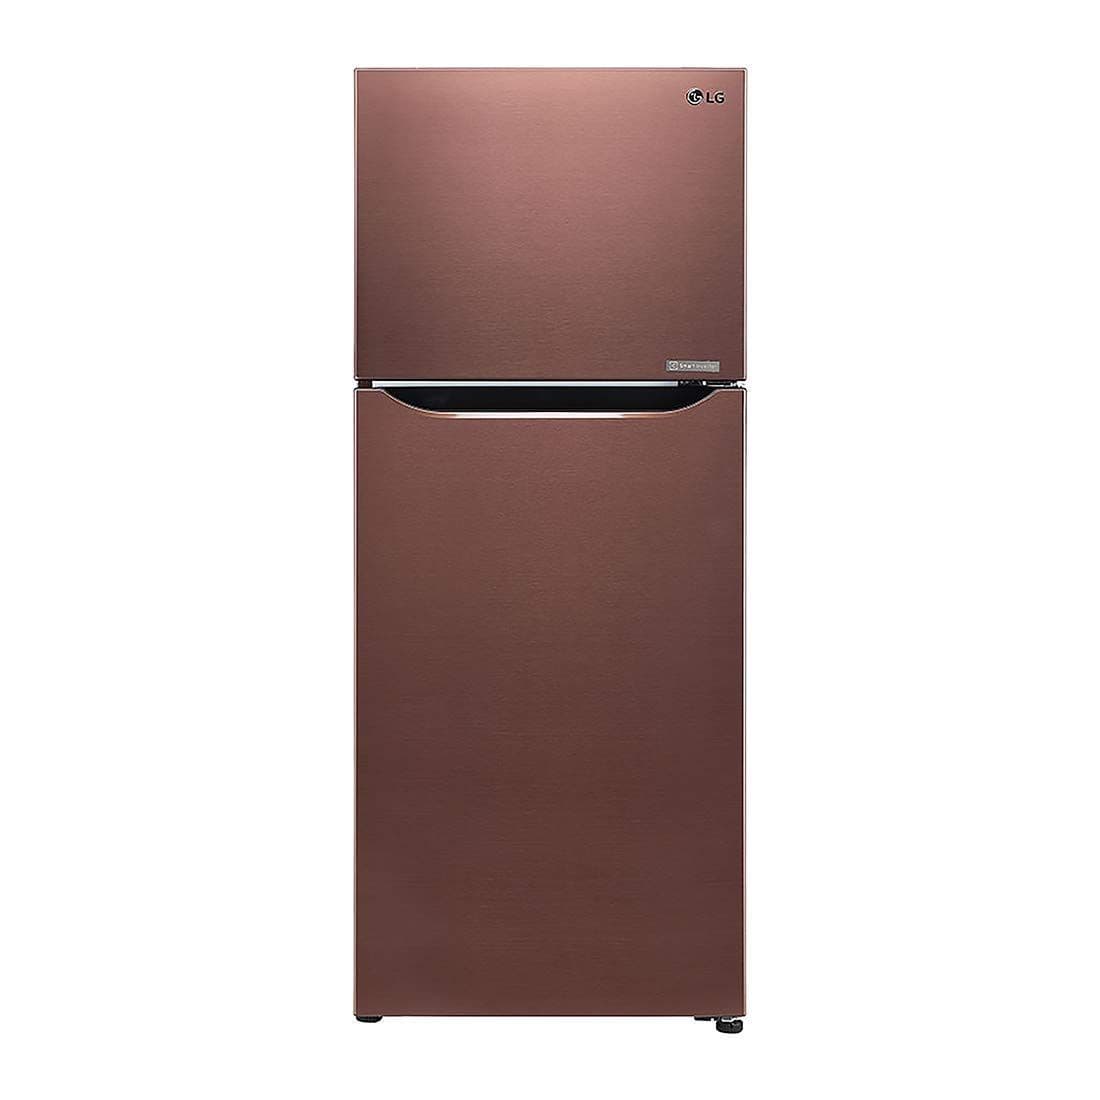 LG GL-C292SASX 260 Ltr Double Door Refrigerator